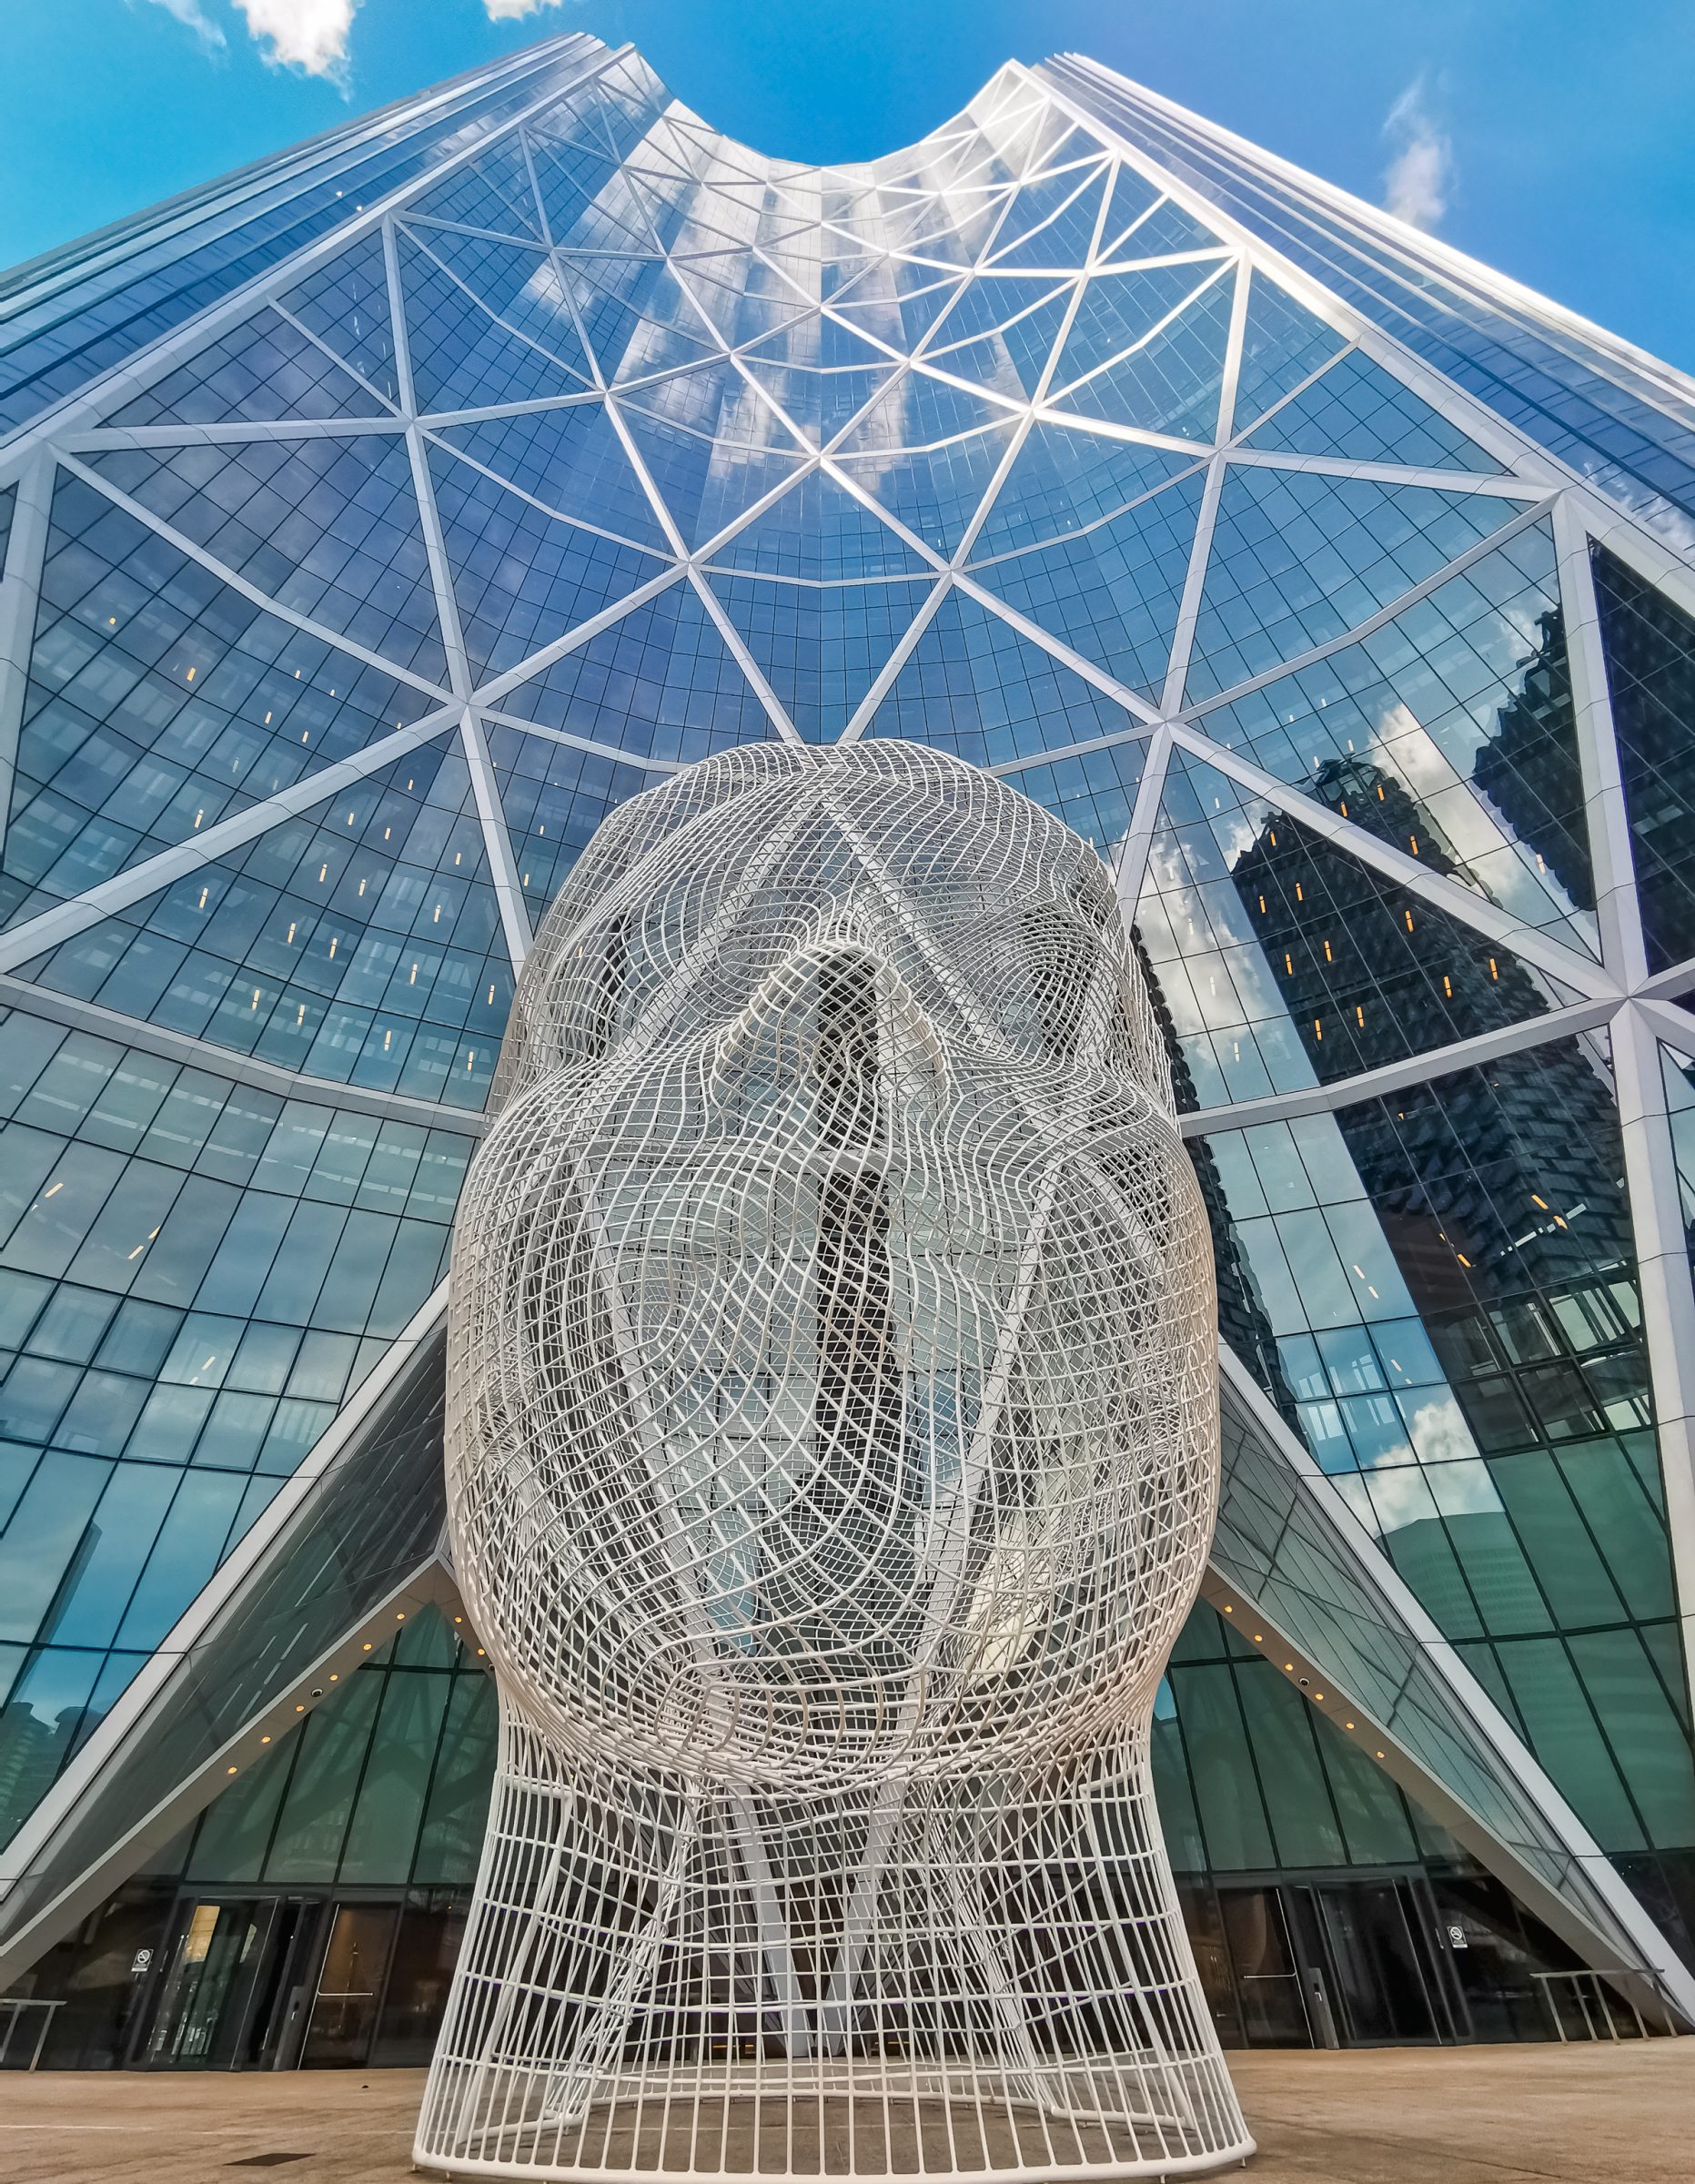 Escultura do País das Maravilhas e O Arco | Dicas para Calgary